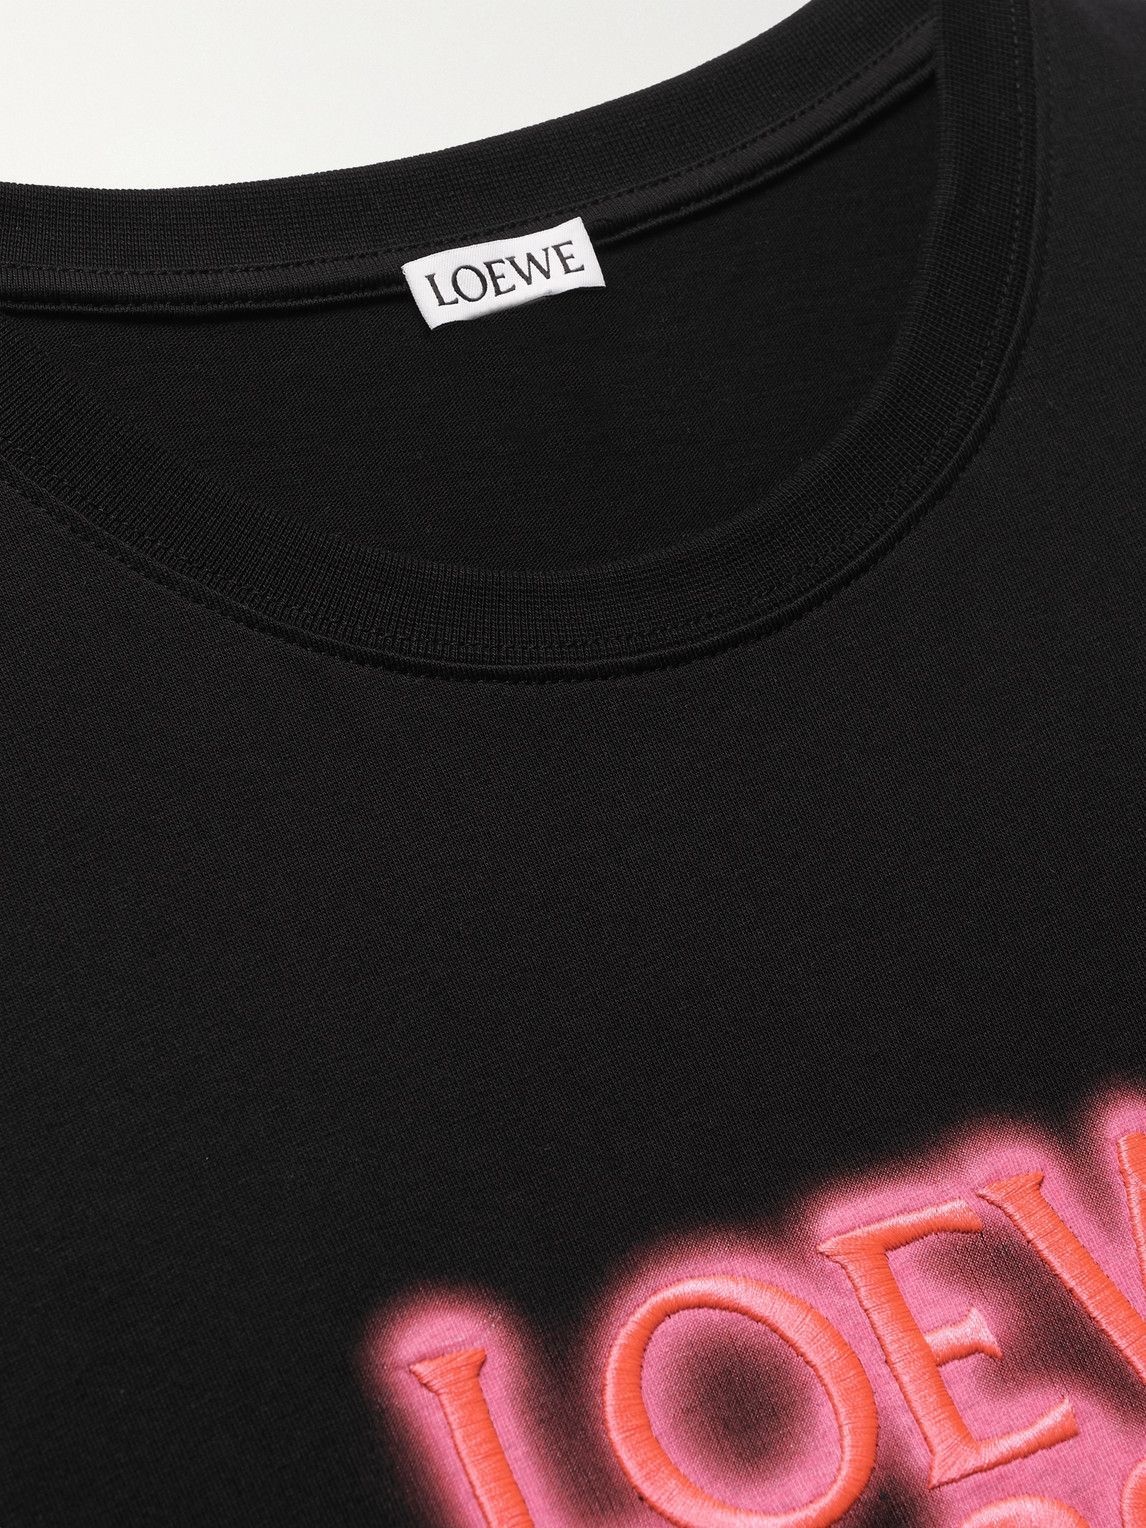 Loewe - Logo-Print Cotton-Jersey T-Shirt - Black Loewe